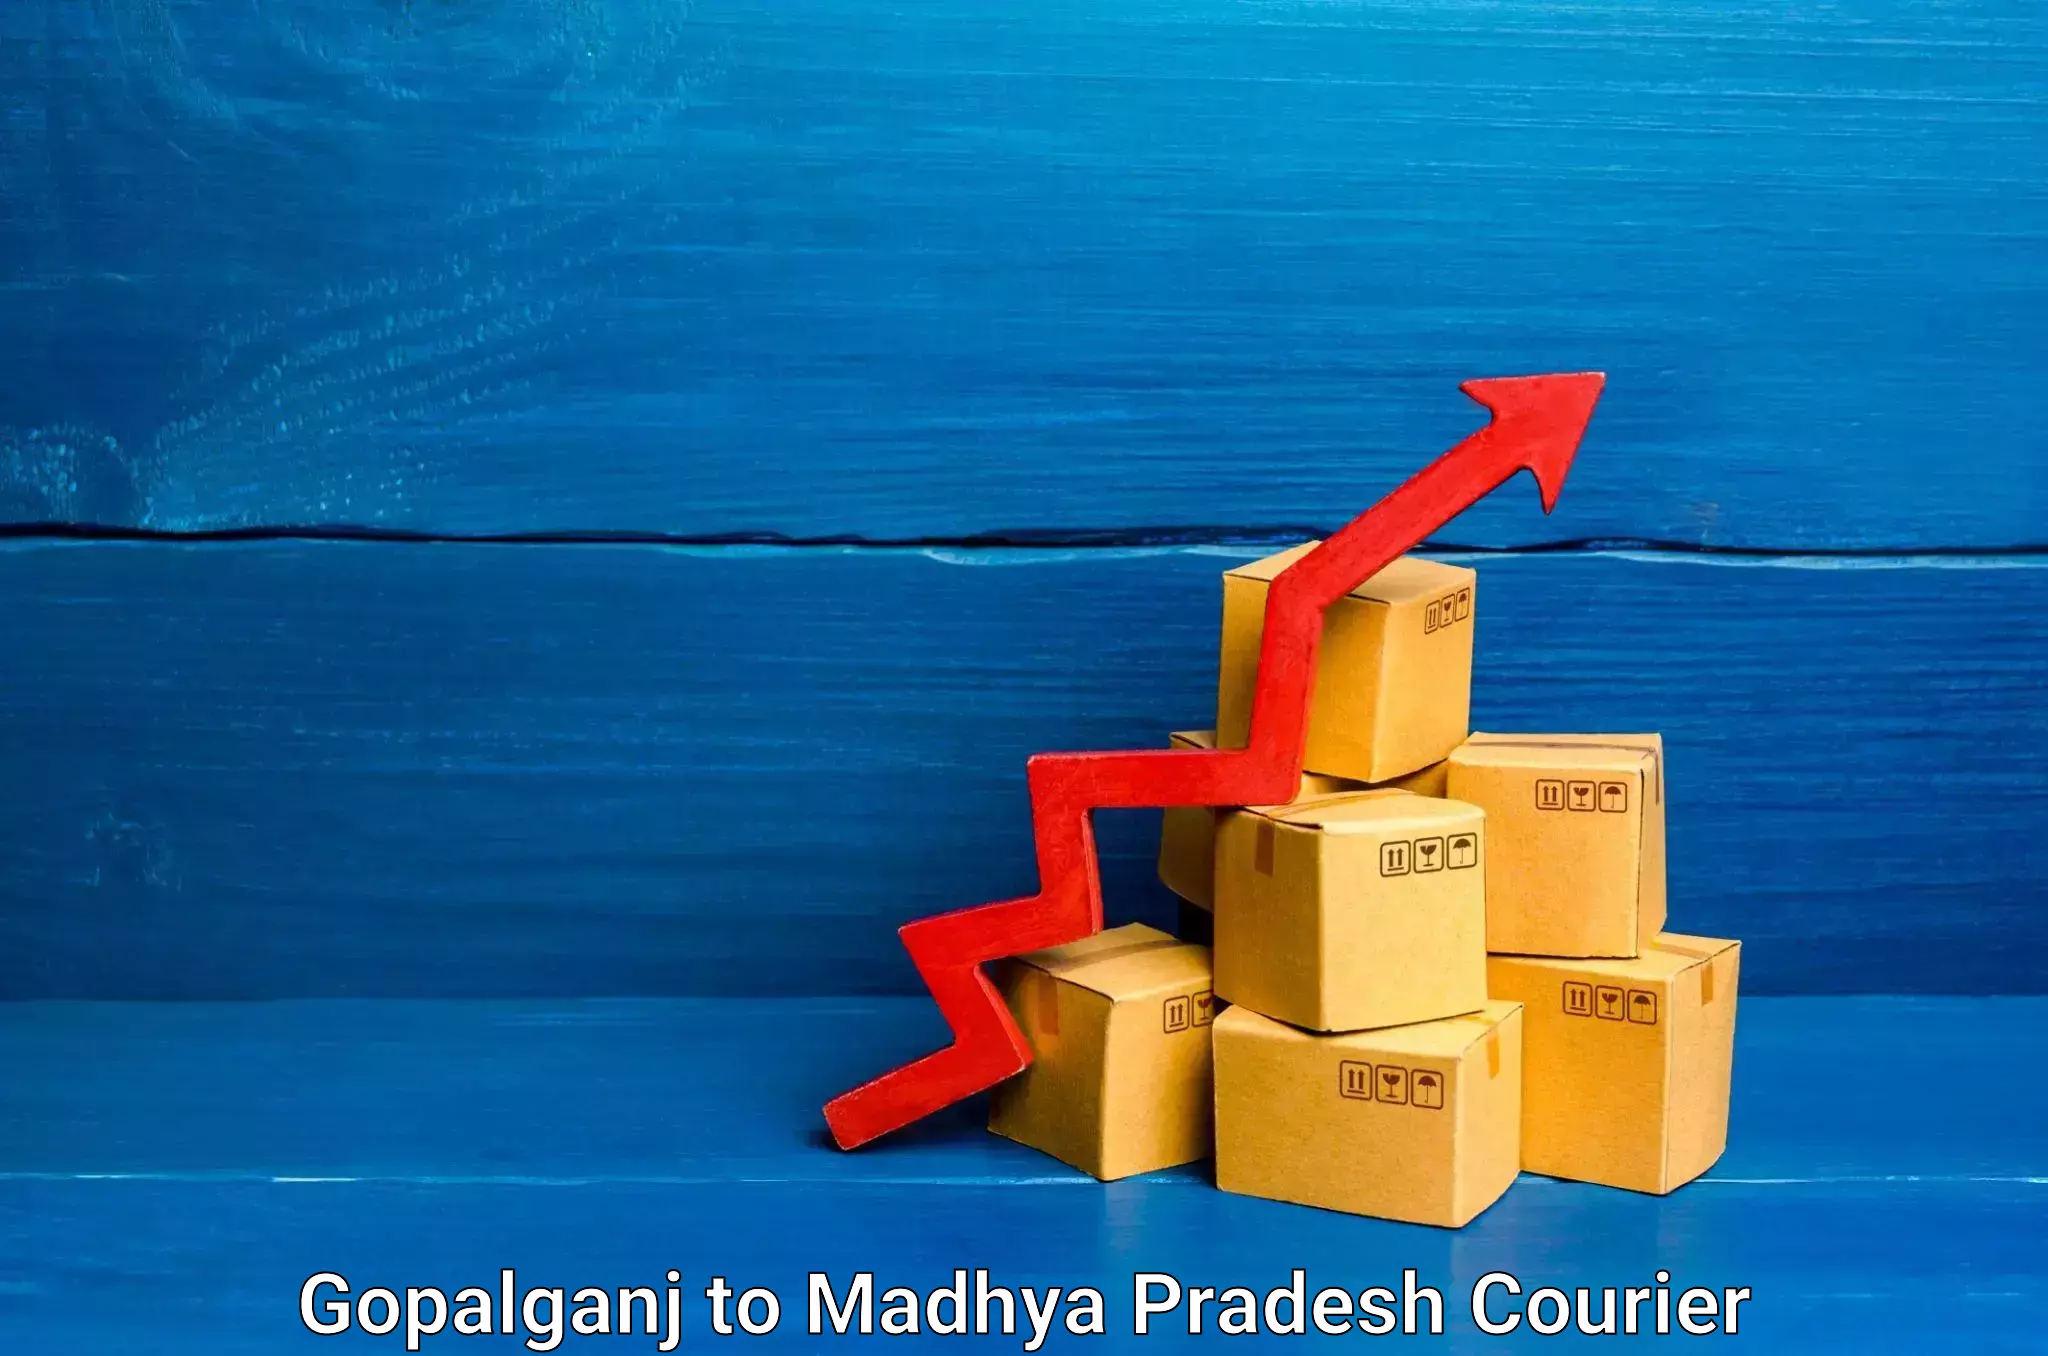 High-quality moving services Gopalganj to Madhya Pradesh